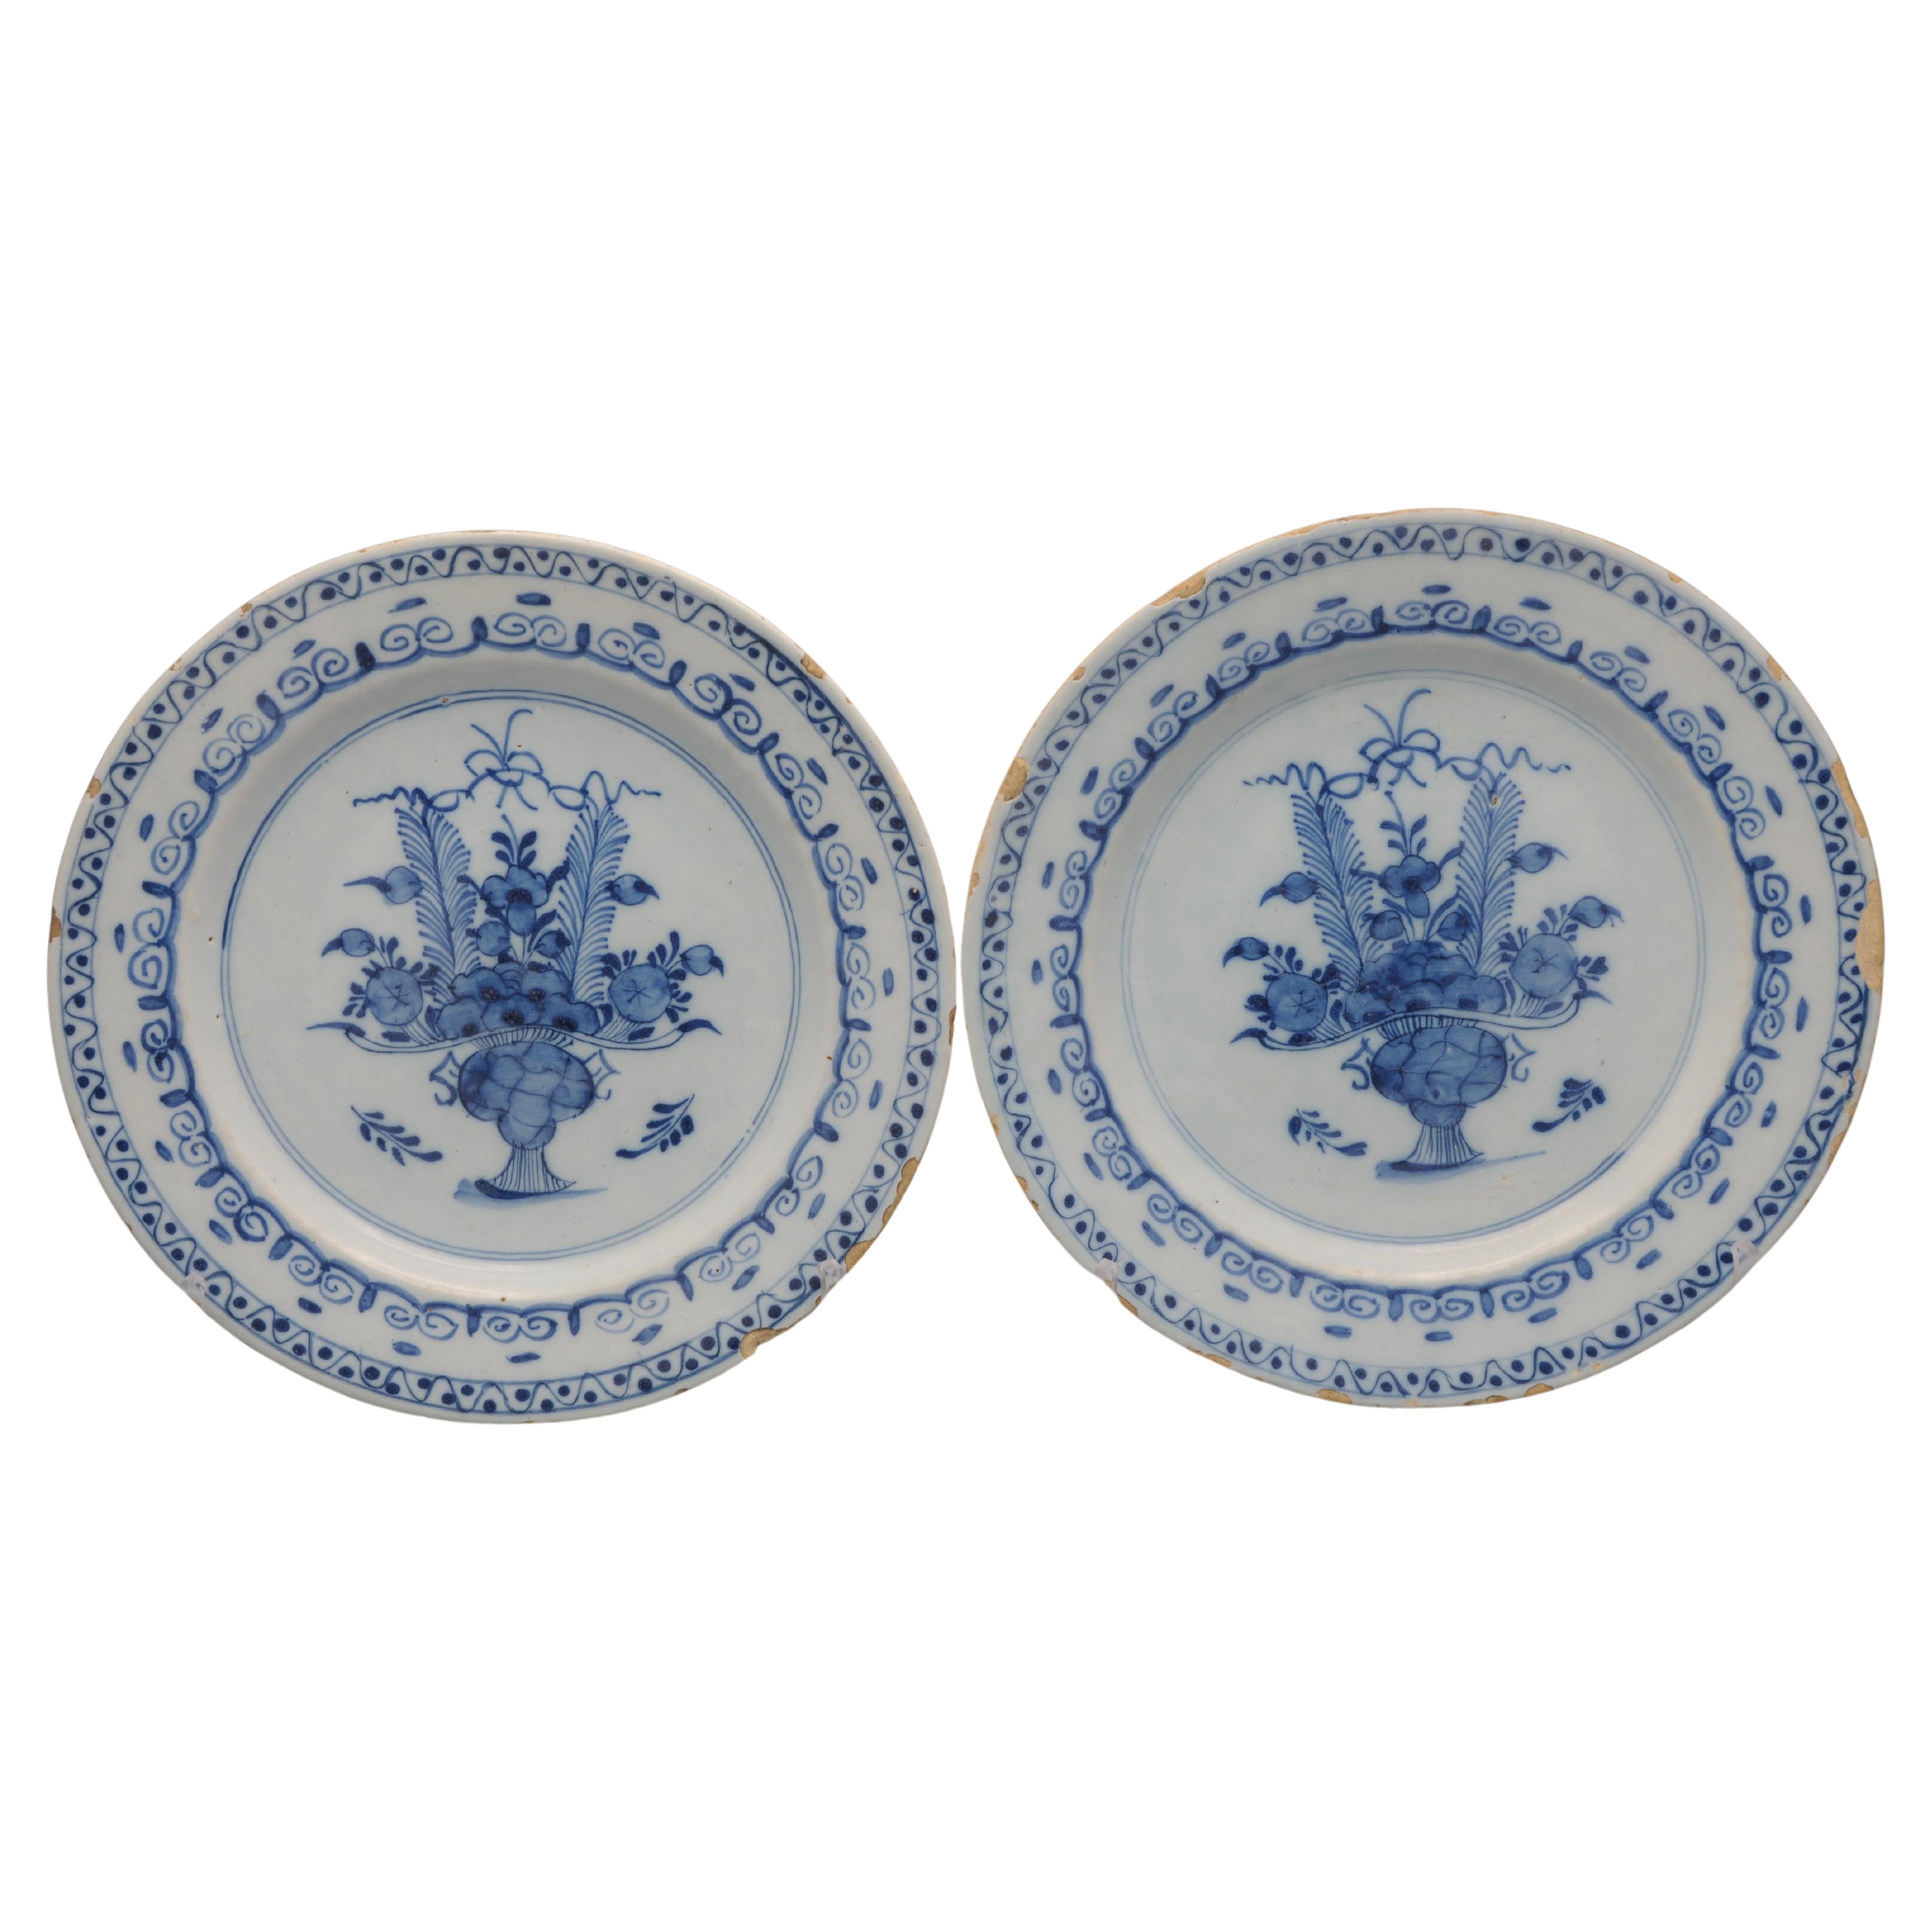 Ausgezeichnetes Paar Delfter Teller aus dem späten 18. Jahrhundert mit feinem Dekor eines blühenden Korbes
Die Umrandung ist mit Laubblättern verziert. 

unmarkiert